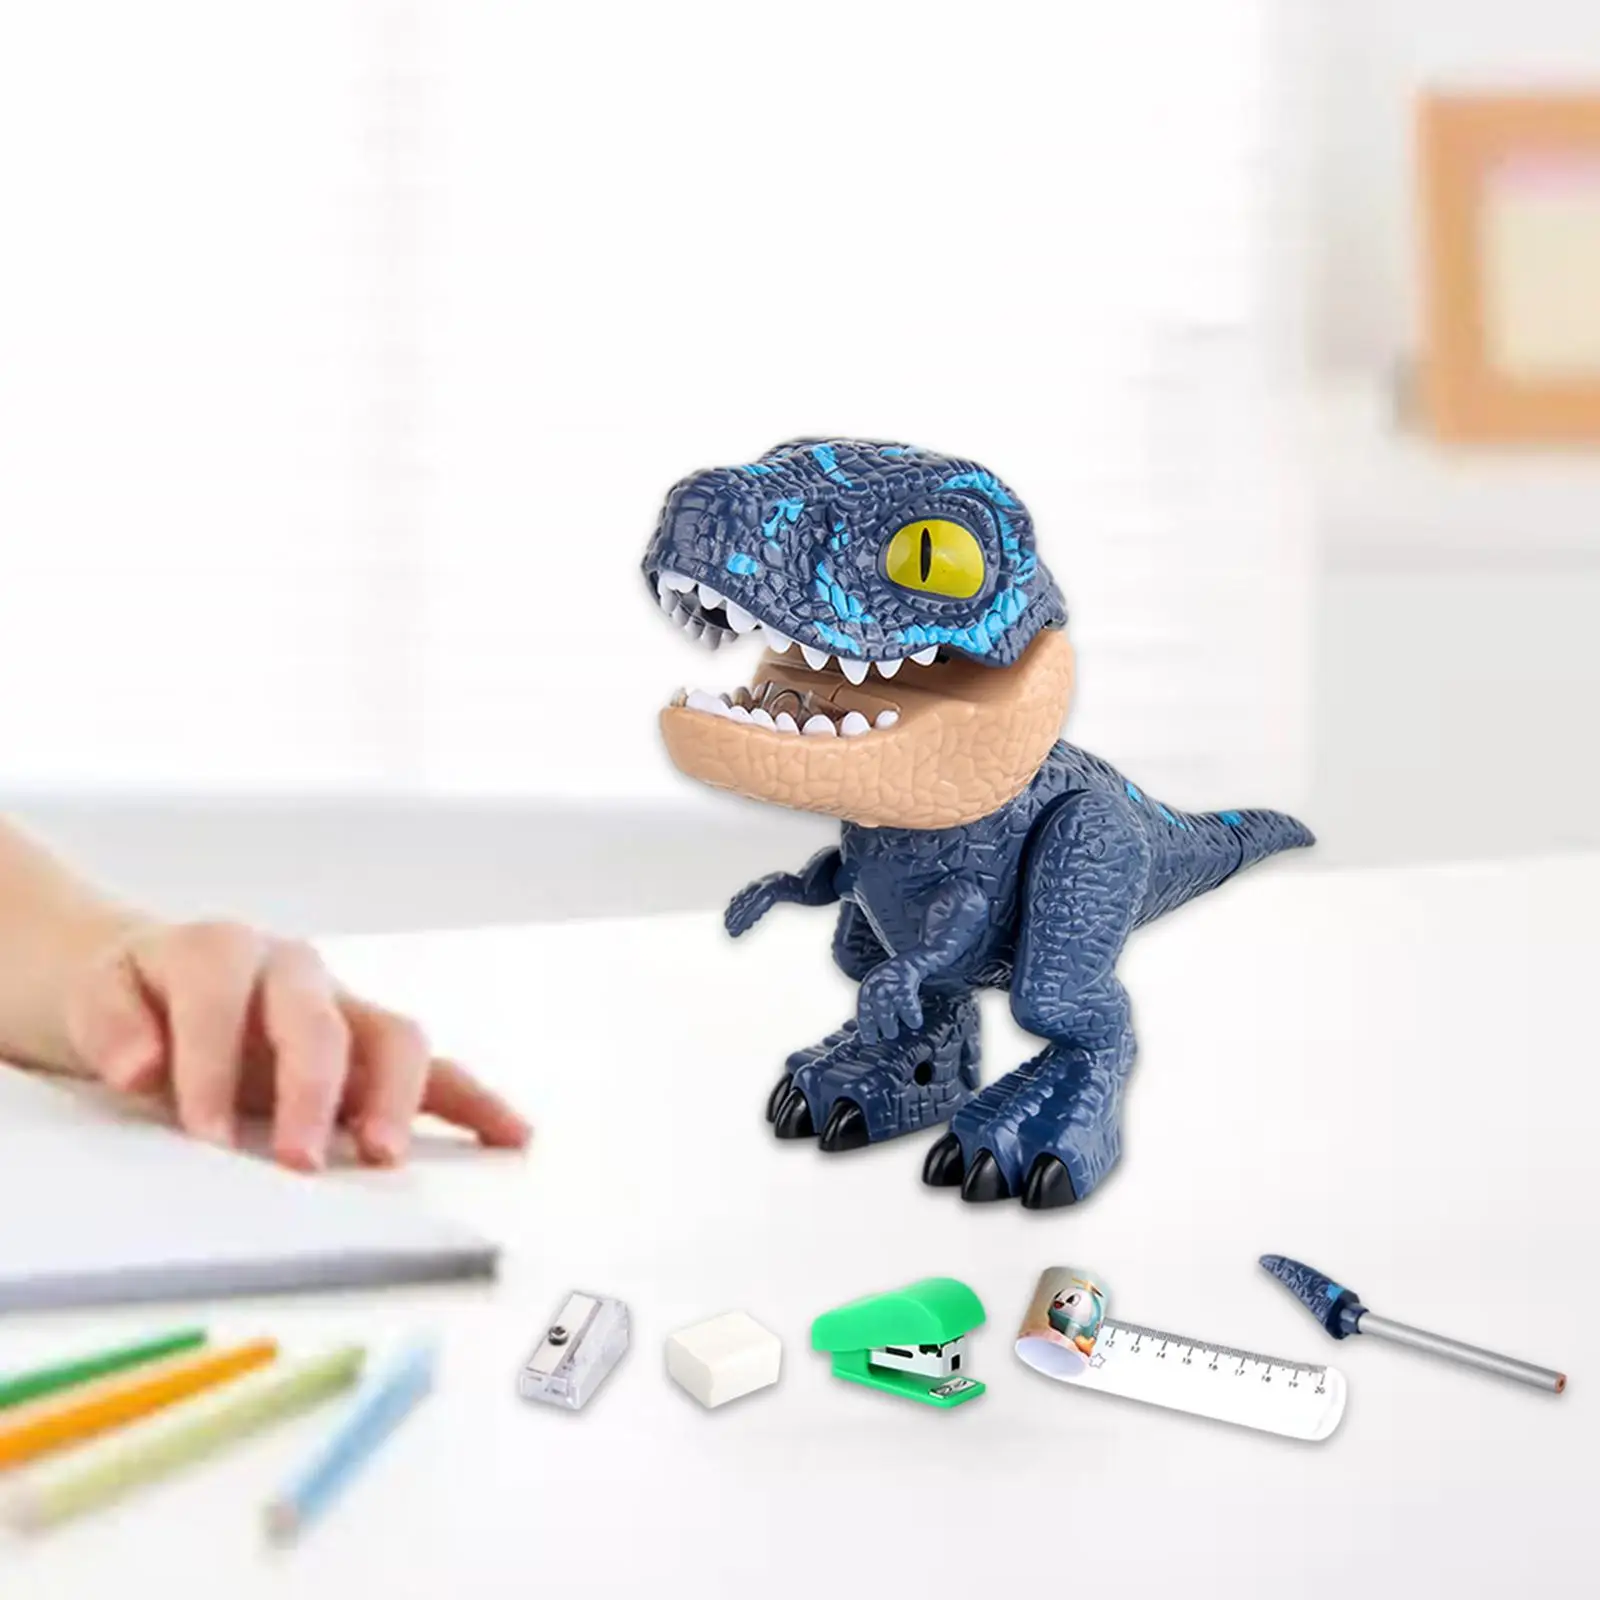 DIY Disassembly Dinosaur Toys Stationery Stapler Pencil Toys for Children